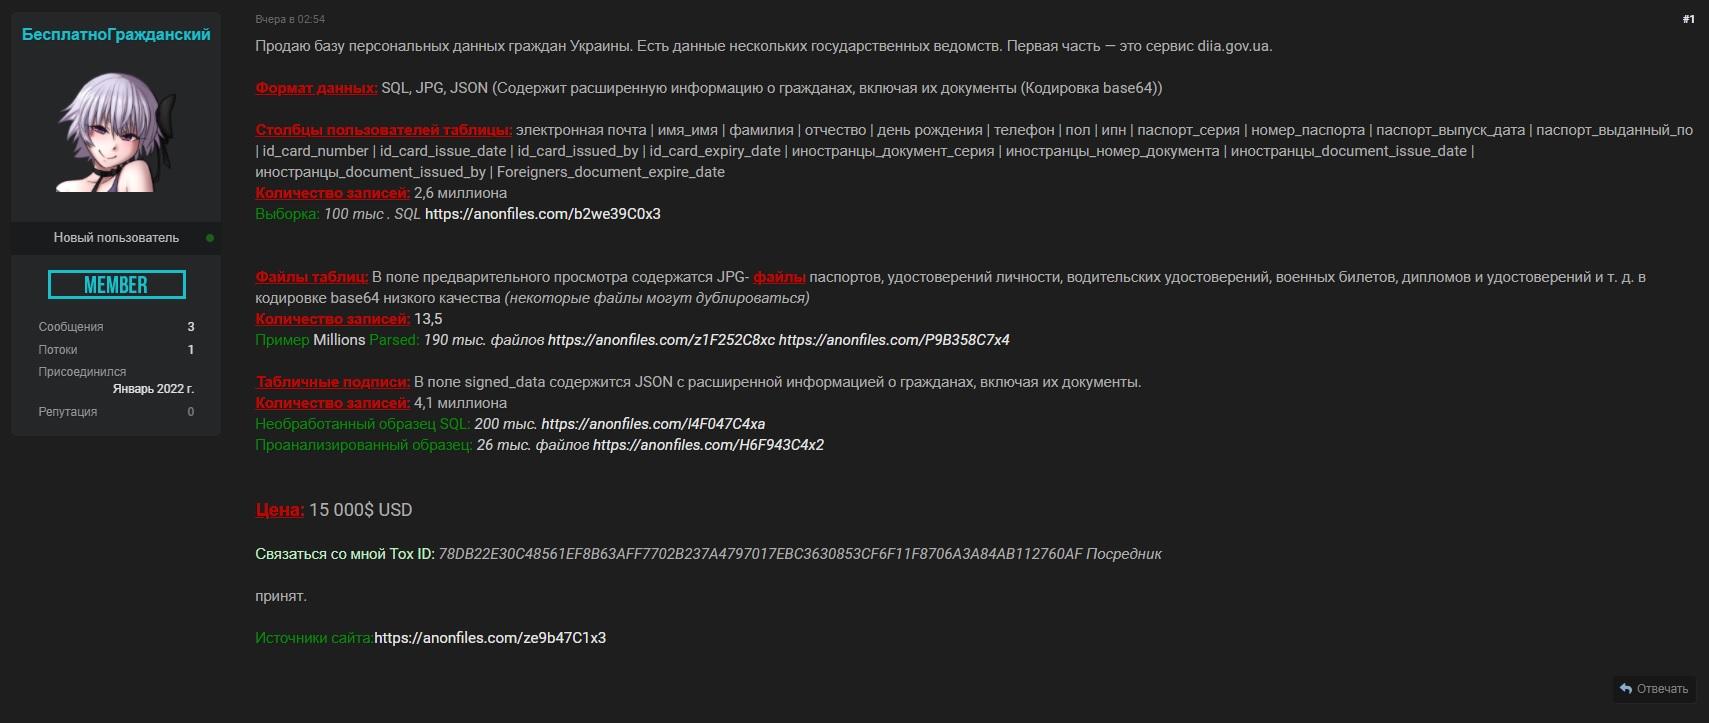 Объявление о продаже базы данных украинских граждан из “Дії” появилось в сети. Минцифры опровергает утечку 1